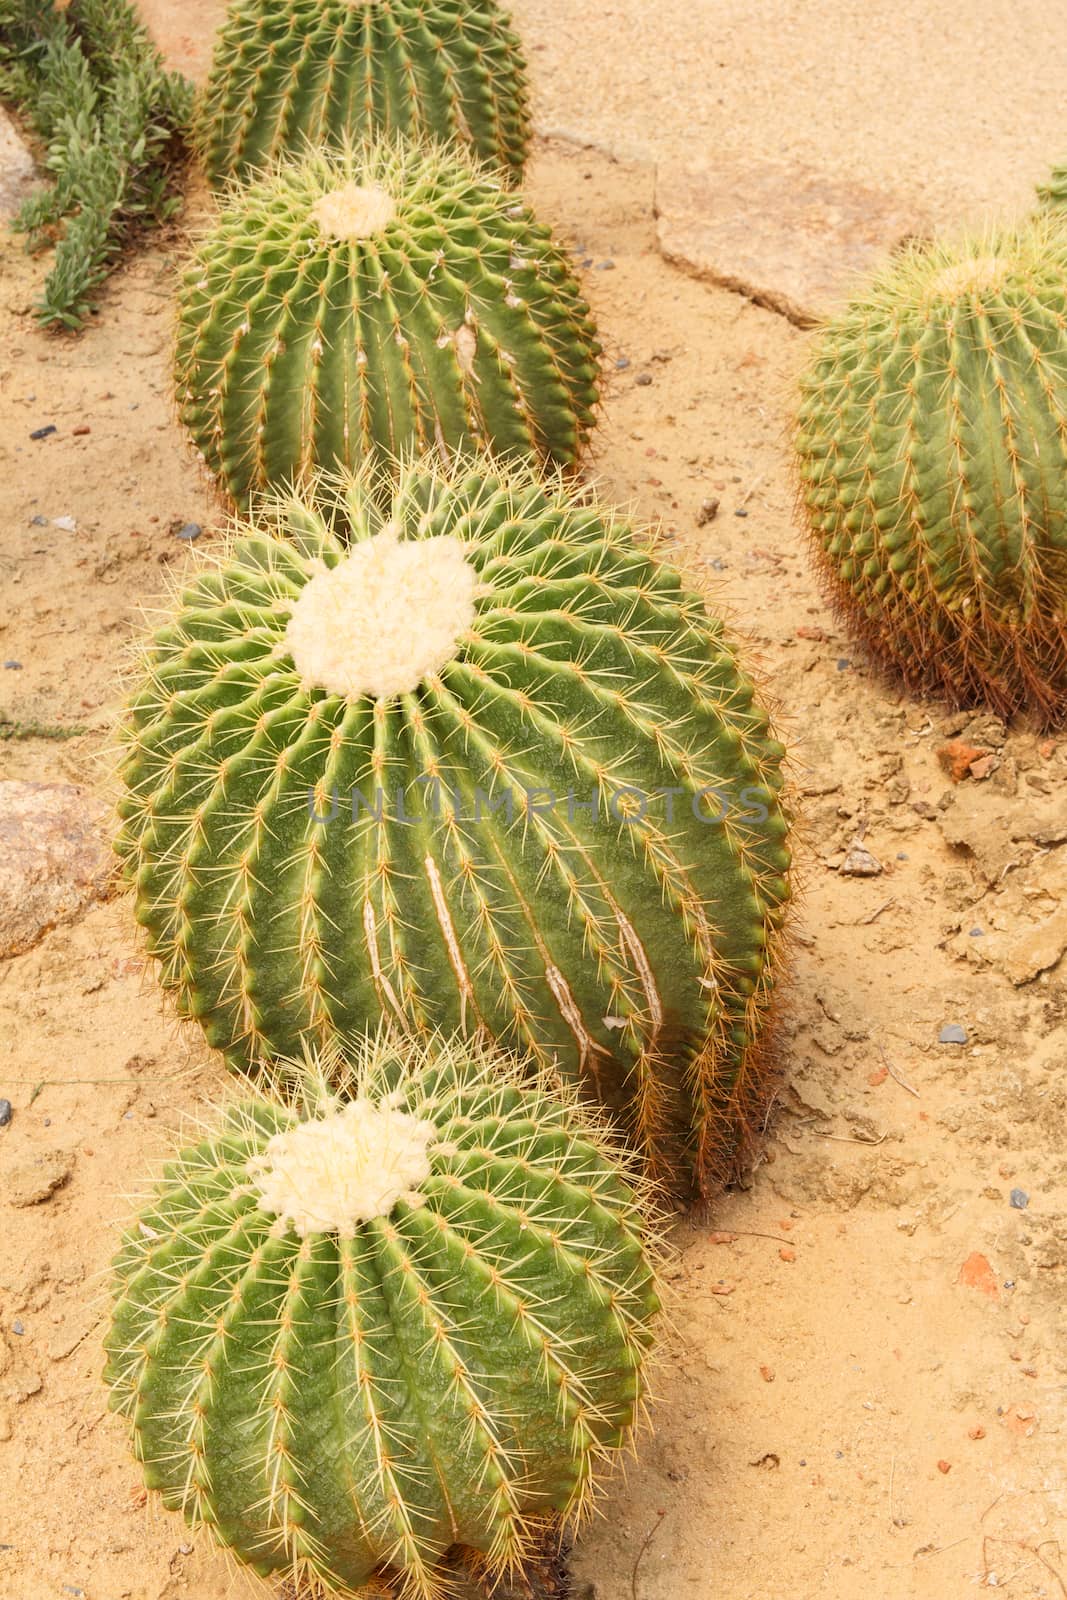 Golden Barrel Cactus by vitawin